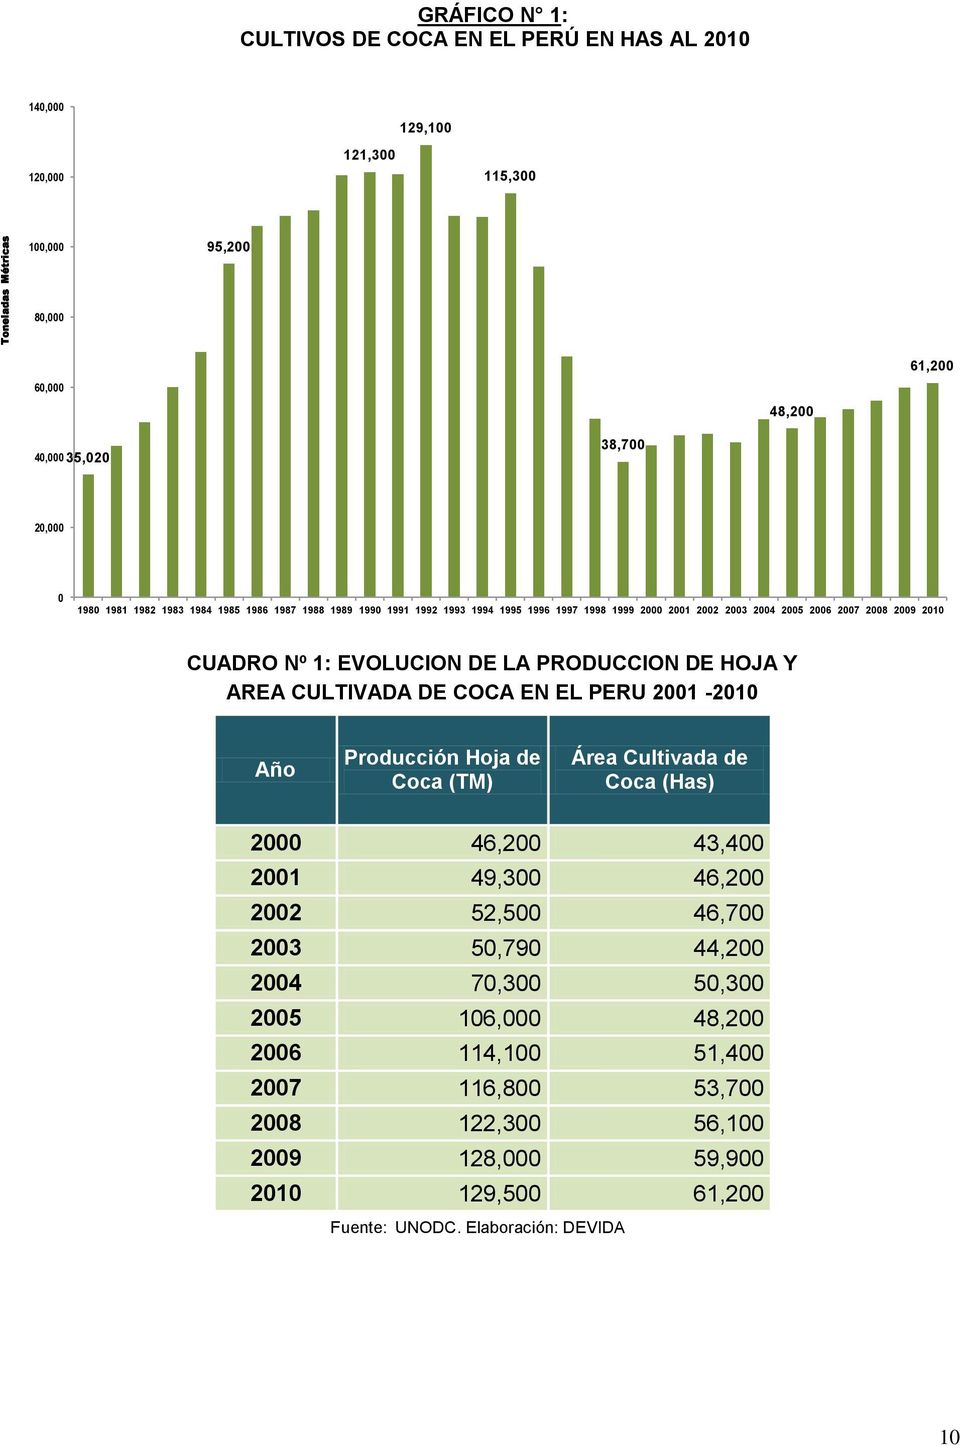 PRODUCCION DE HOJA Y AREA CULTIVADA DE COCA EN EL PERU 2001-2010 Año Producción Hoja de Coca (TM) Área Cultivada de Coca (Has) 2000 46,200 43,400 2001 49,300 46,200 2002 52,500 46,700